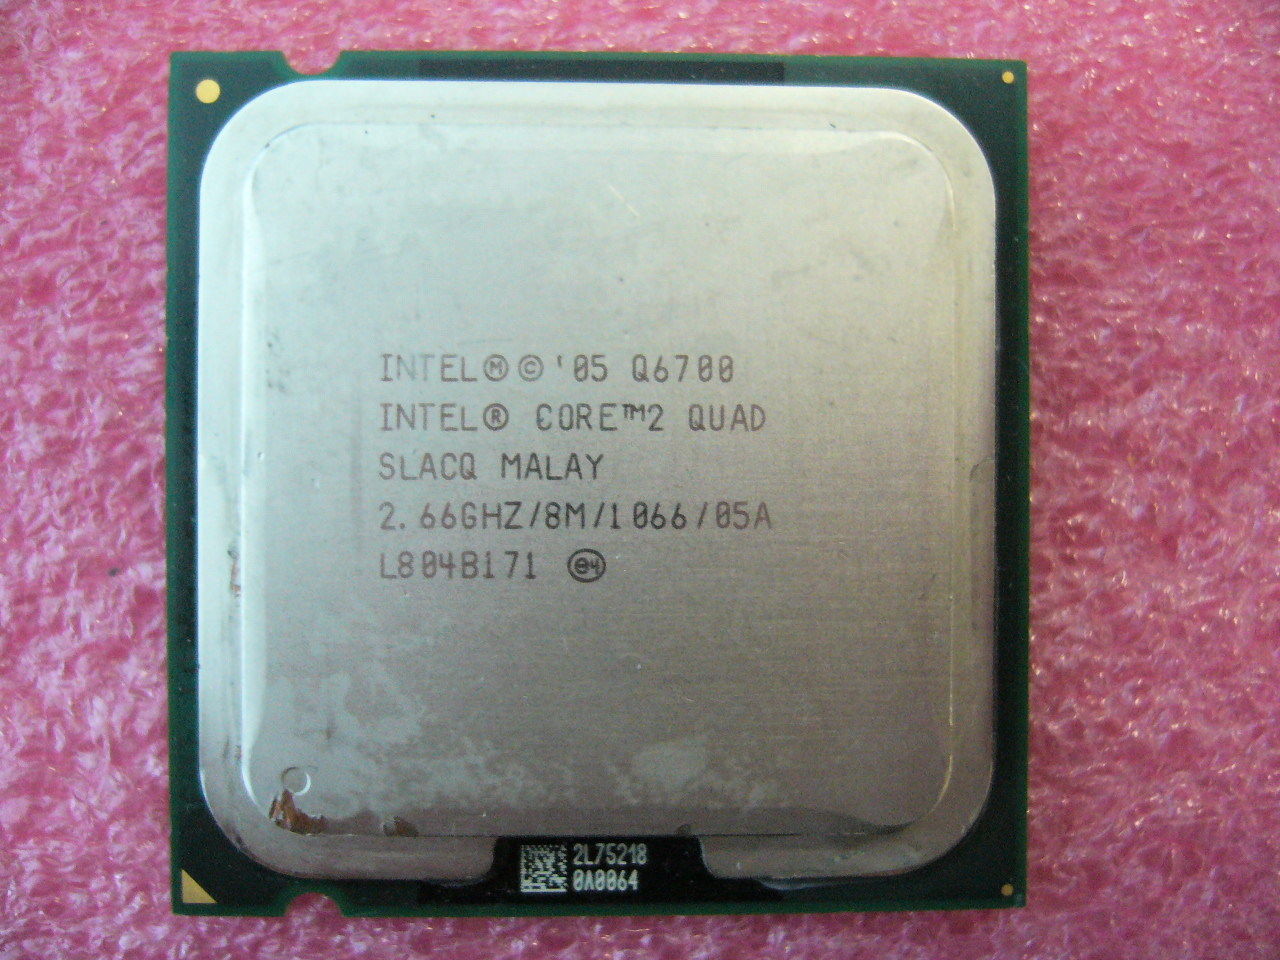 QTY 1x INTEL Core2 Quad Q6700 CPU 2.66GHz/8MB/1066Mhz LGA775 SLACQ